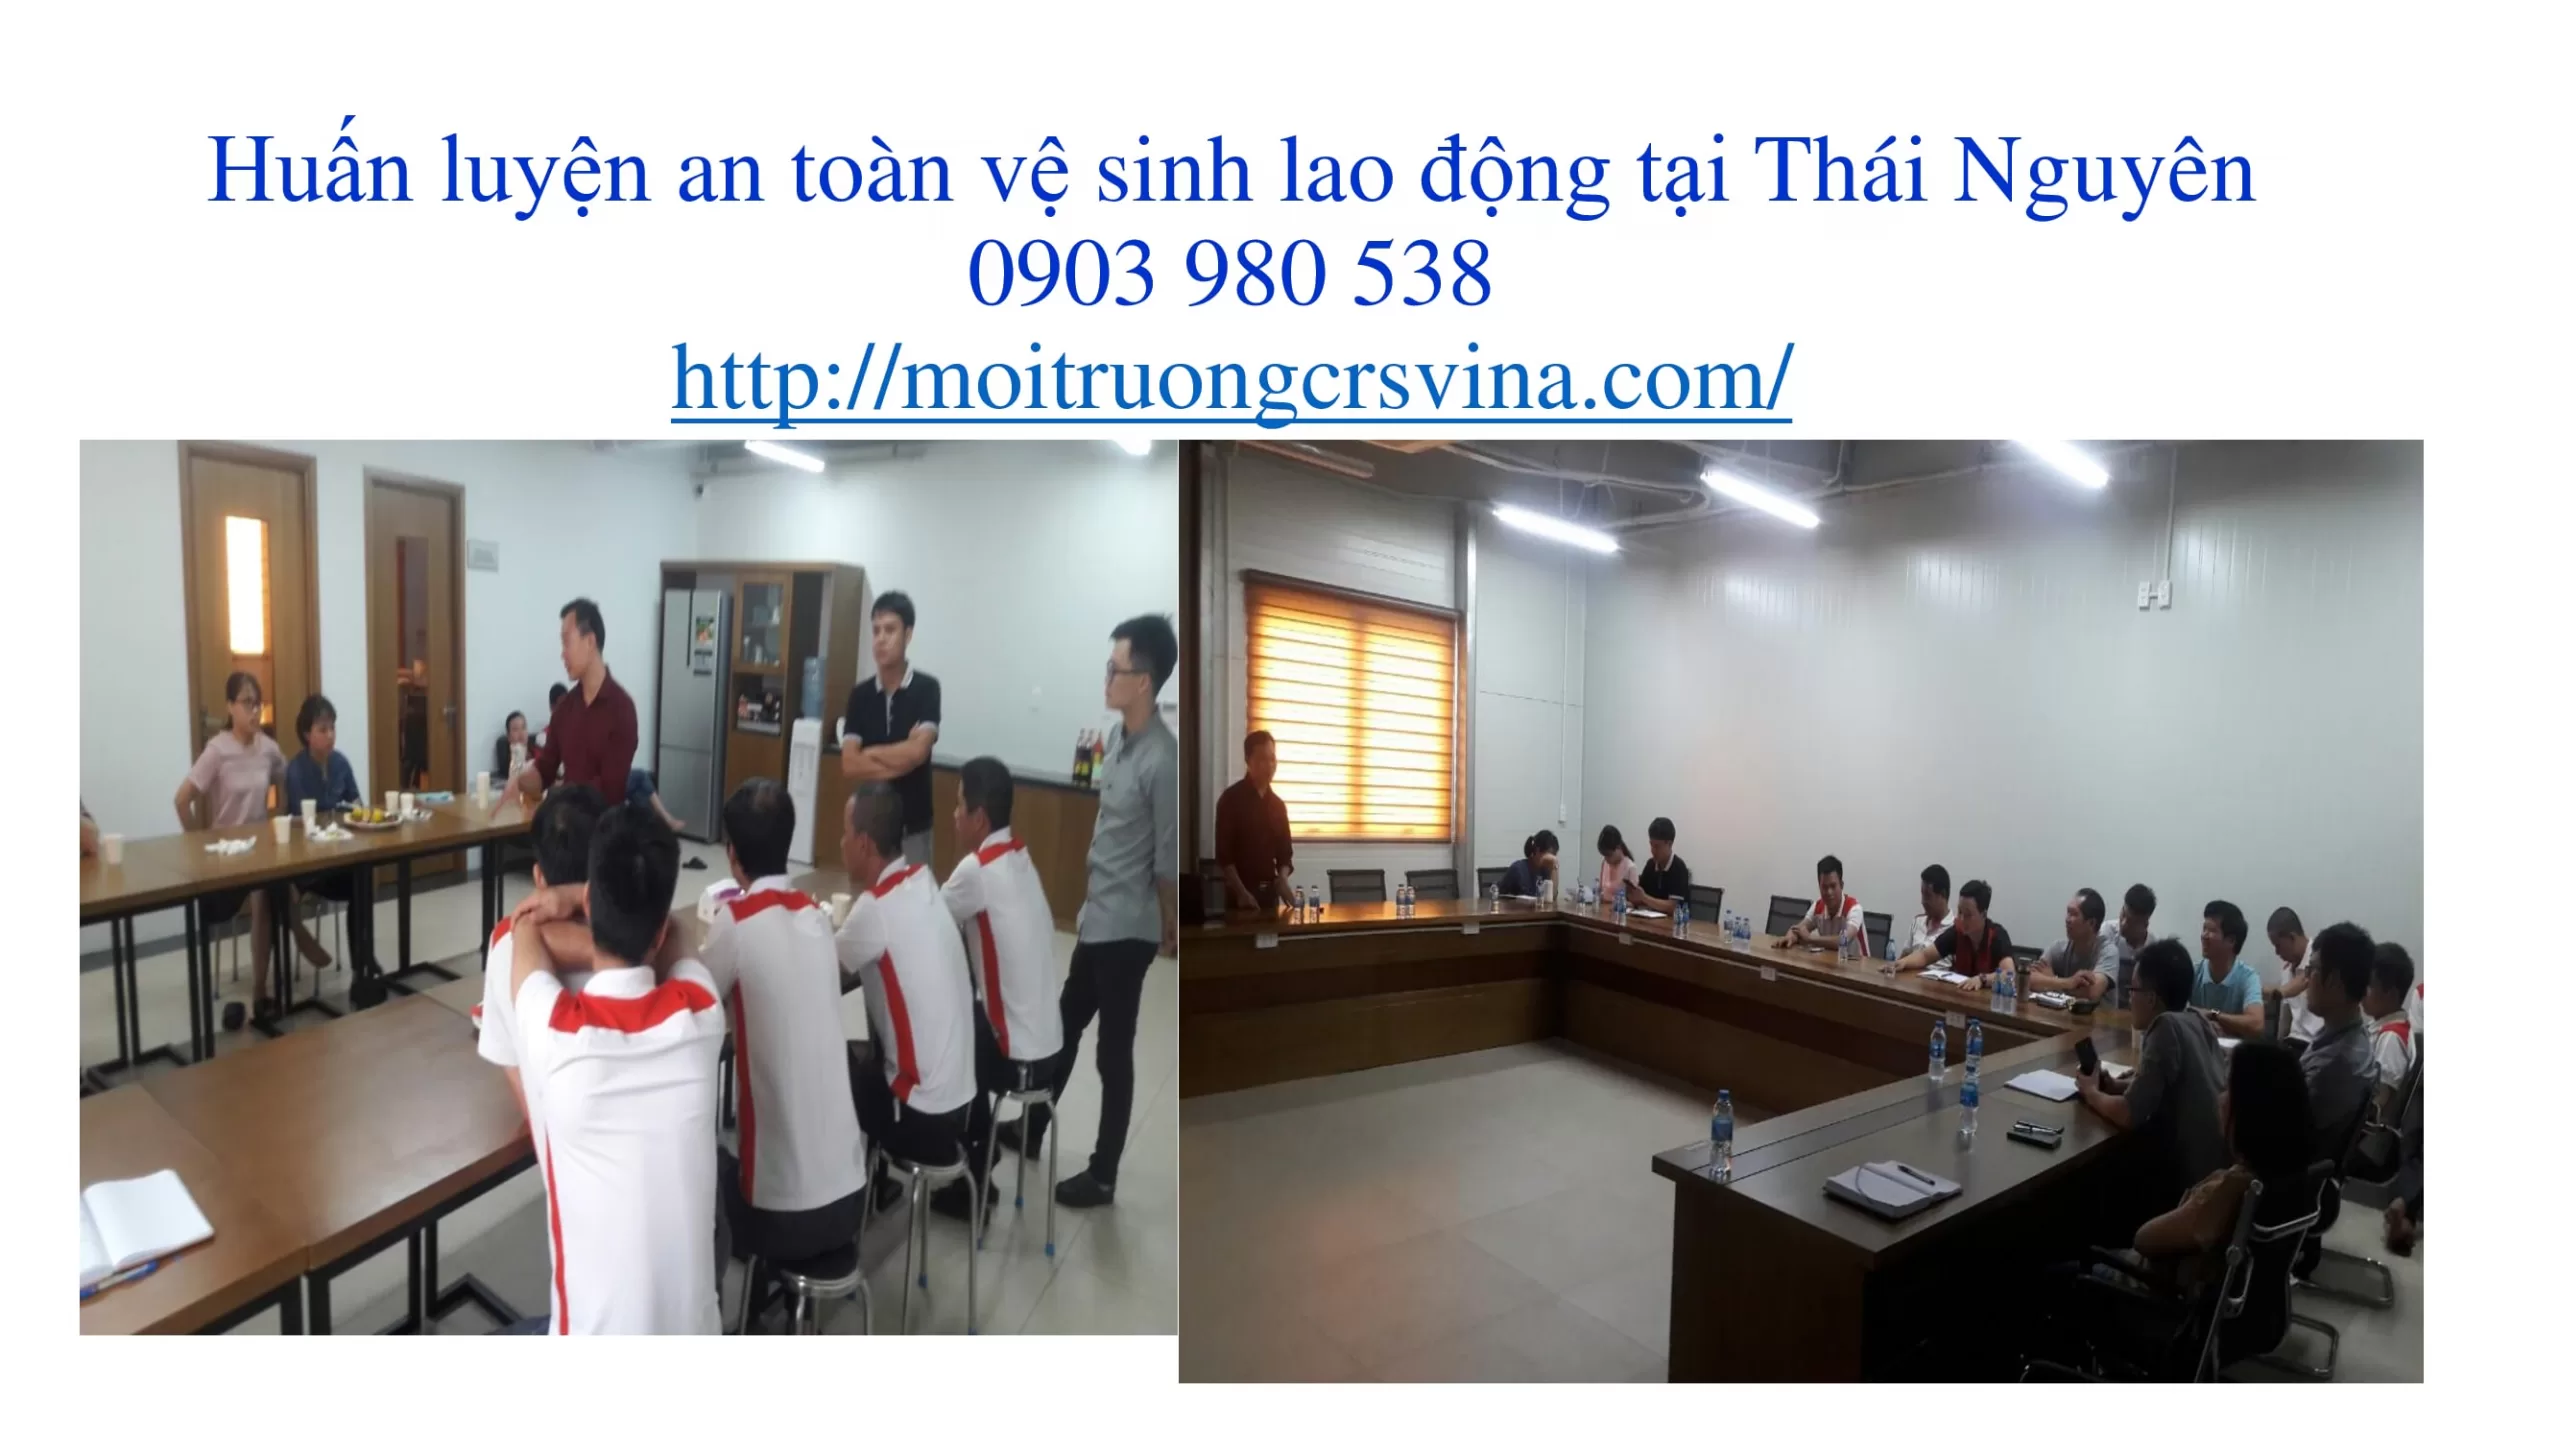 Huấn luyện an toàn vệ sinh lao động tai Thái Nguyên scaled